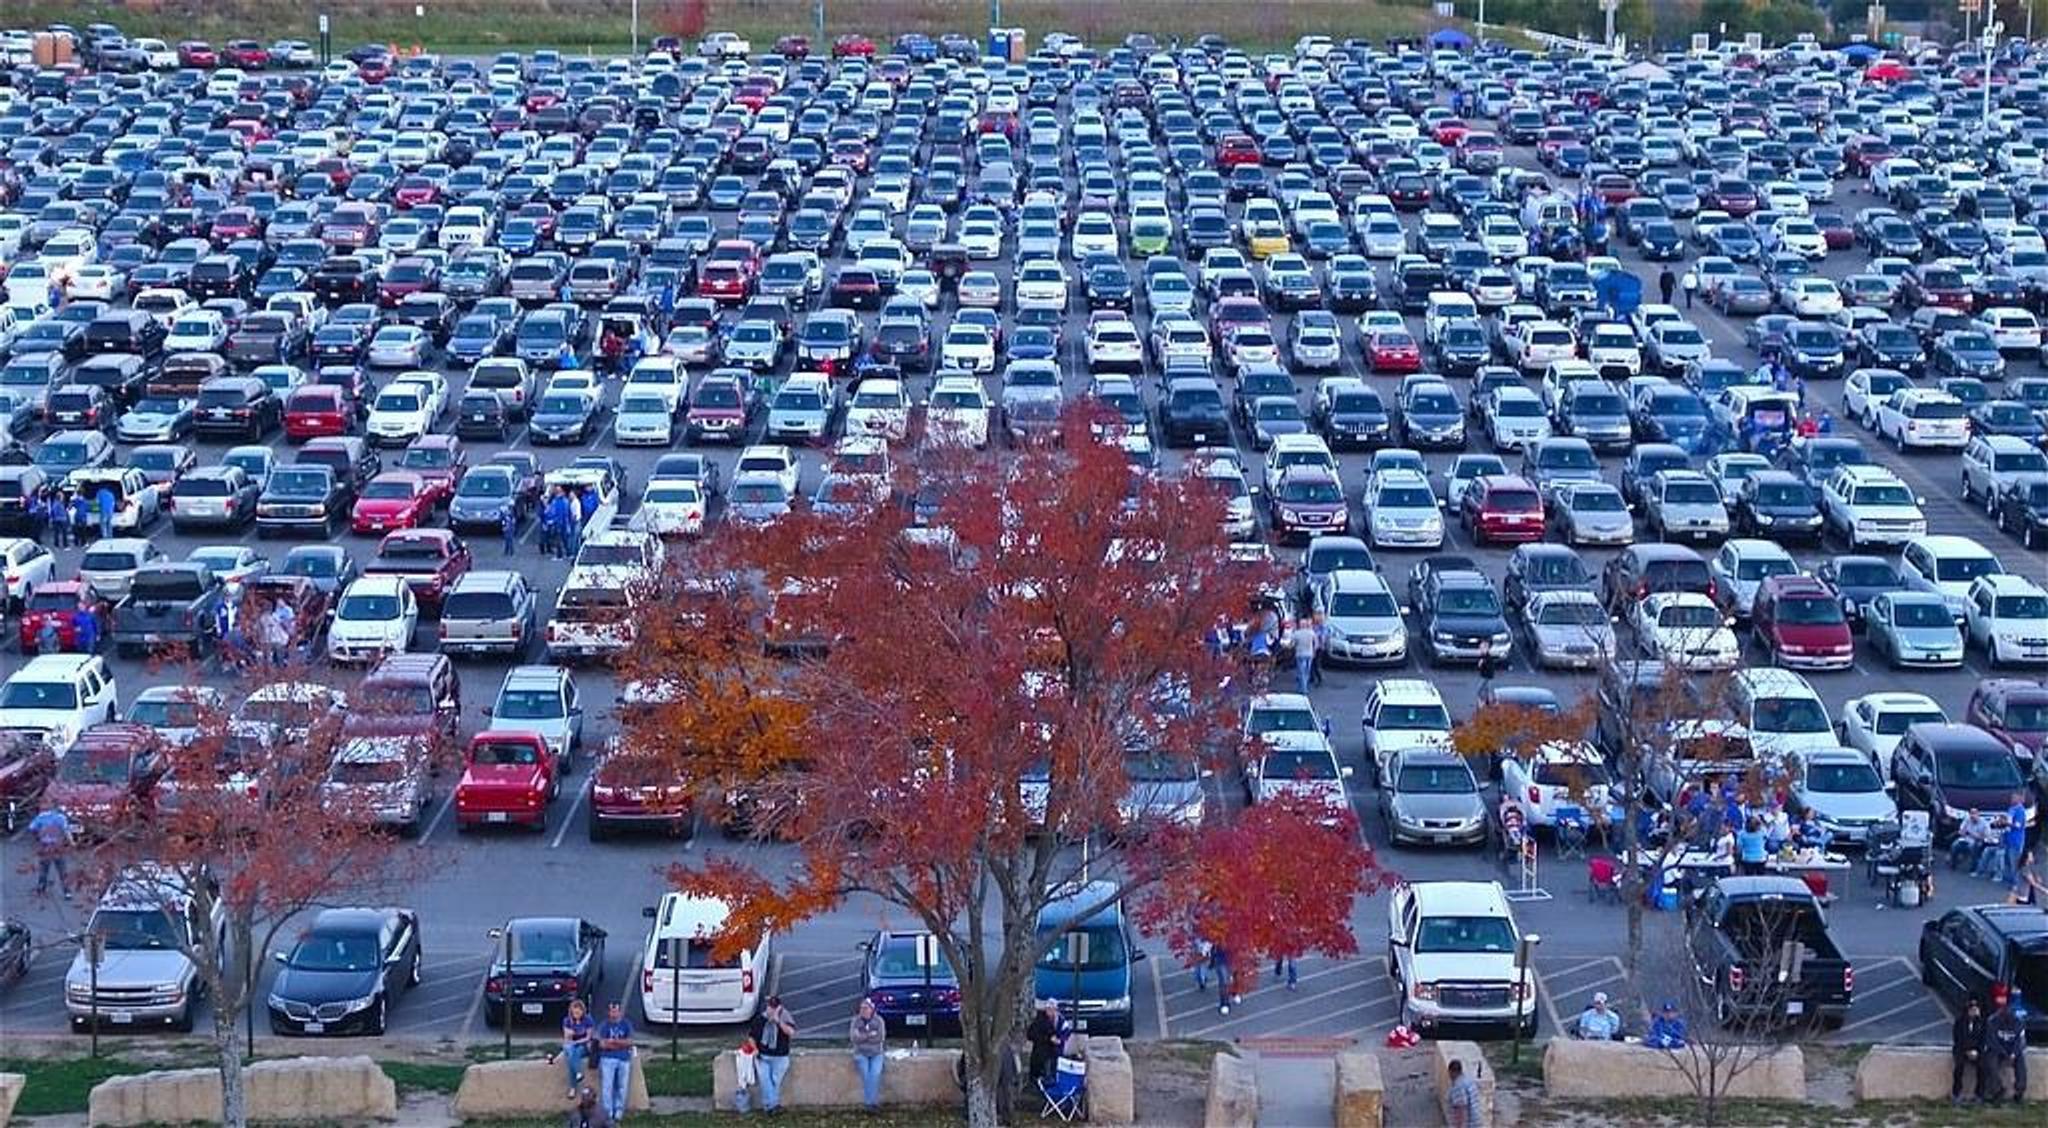 Stovky aut na parkovišti